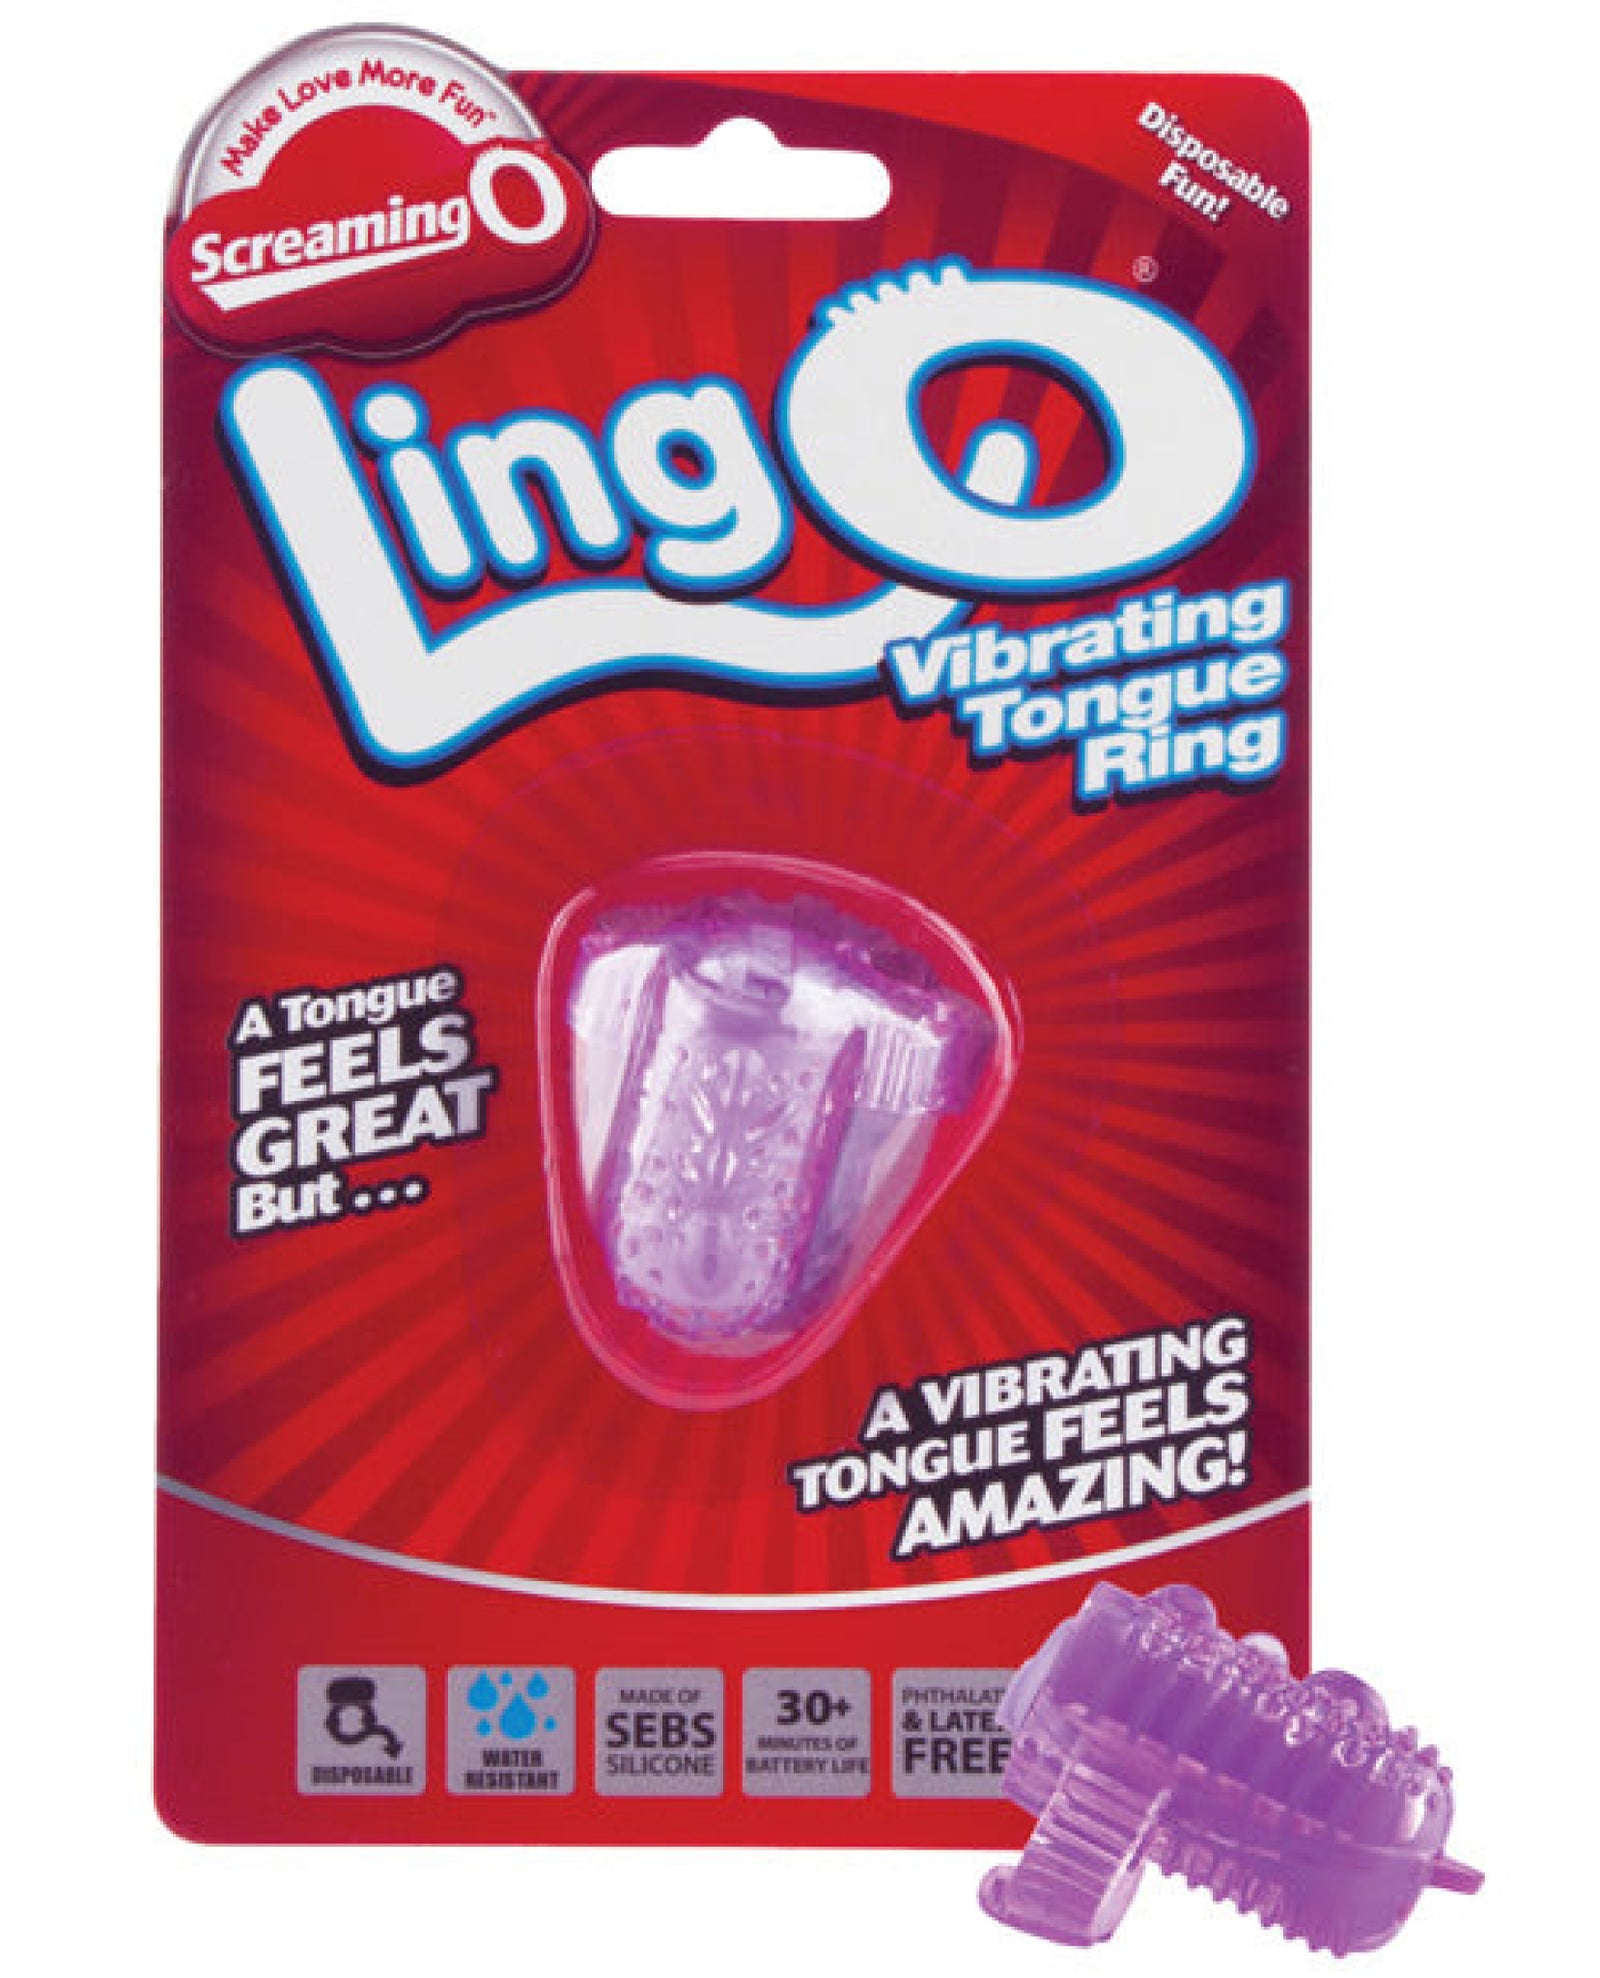 Screaming O Lingo Vibrating Tongue Ring Screaming O